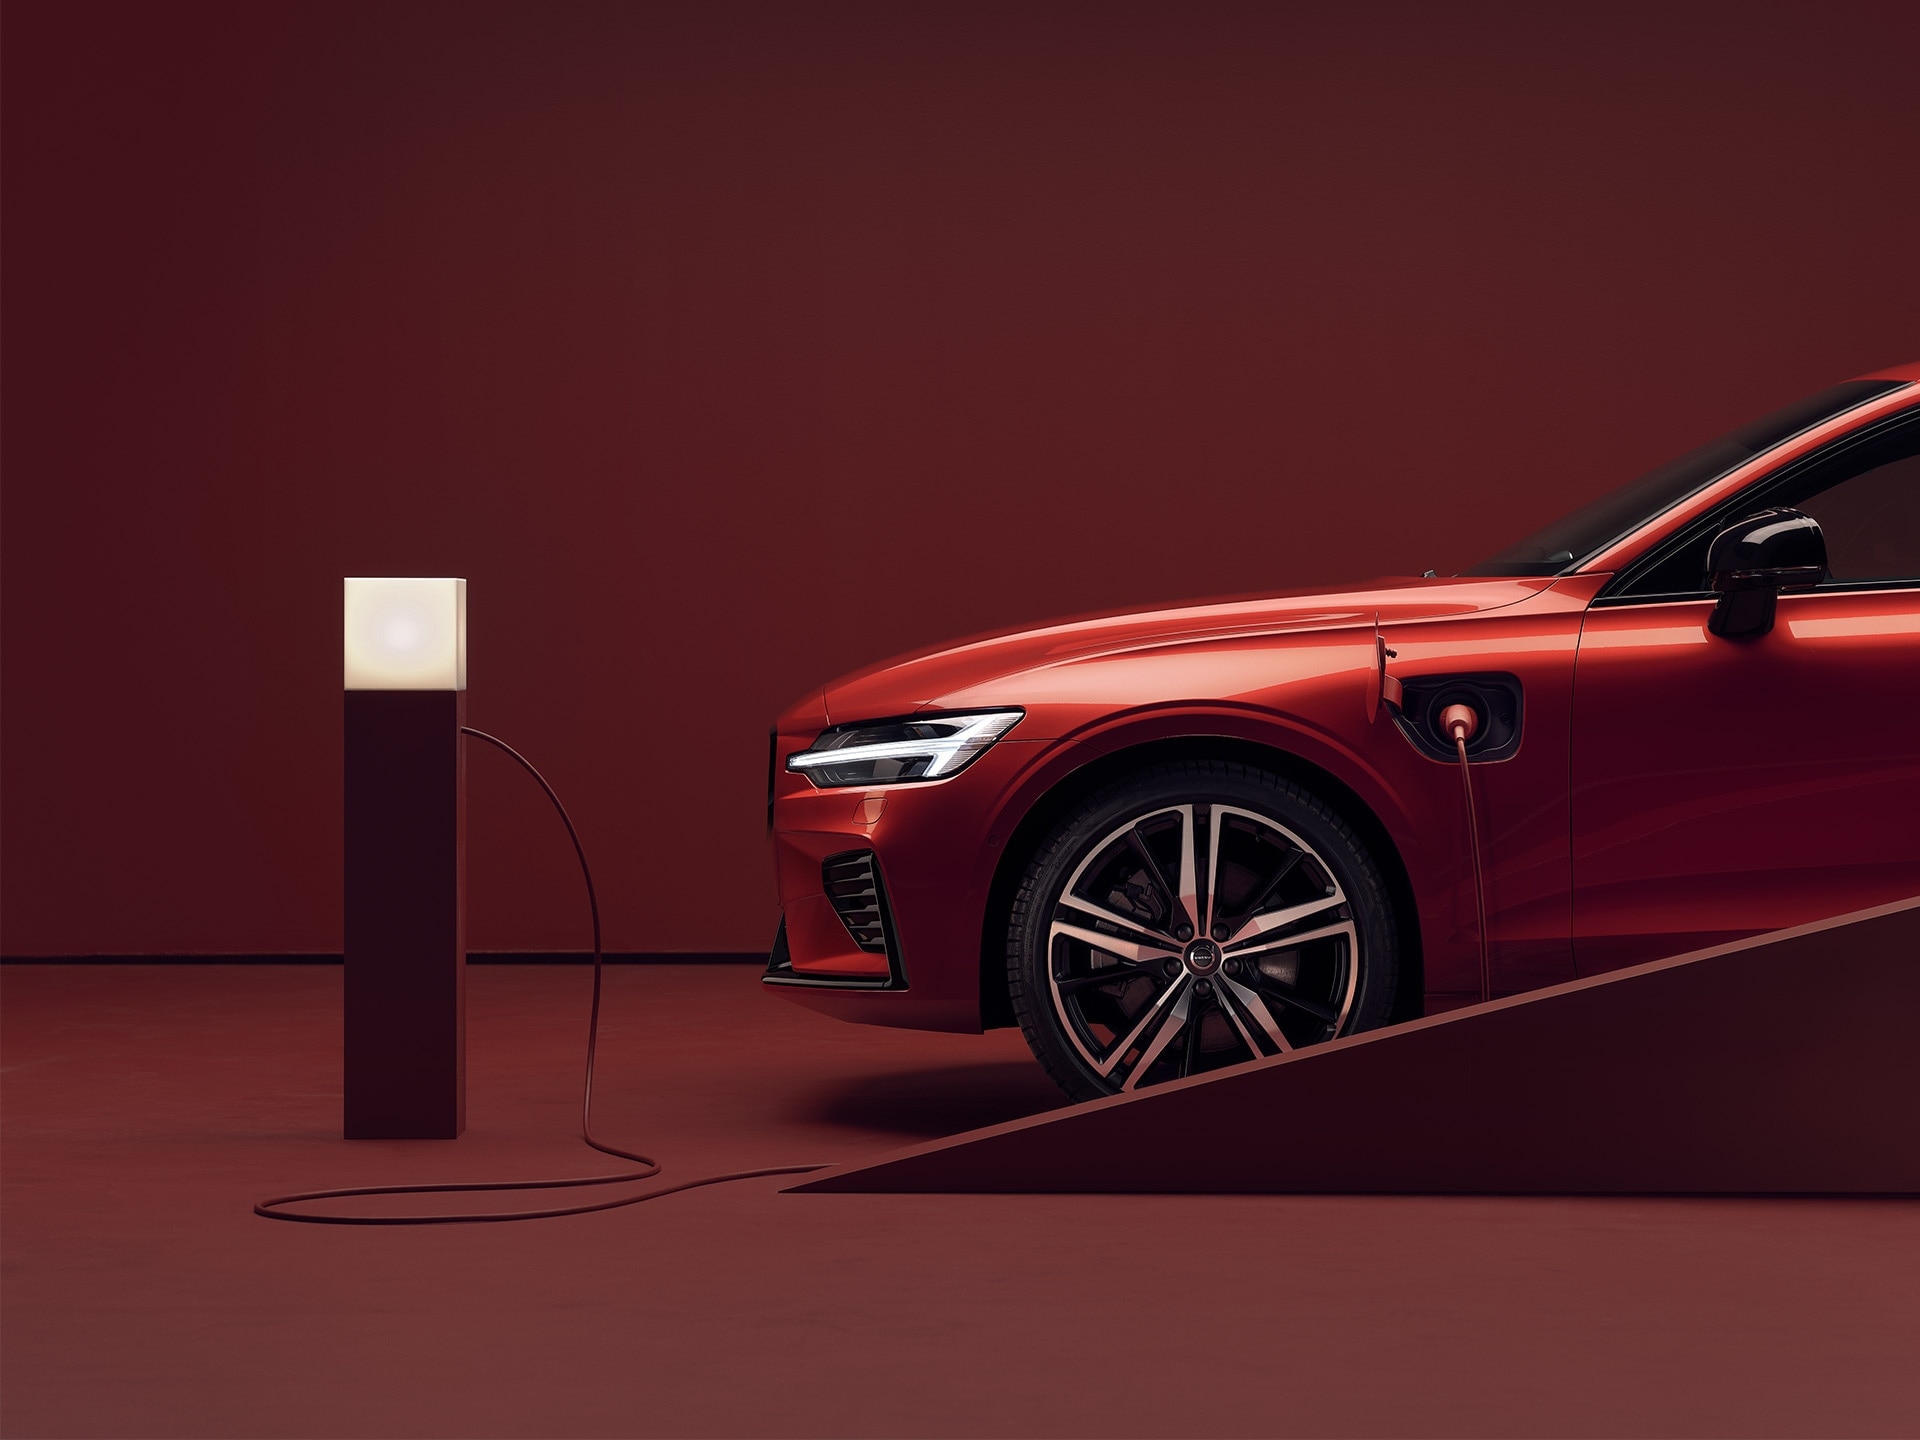 Berline Volvo rouge en stationnement branchée sur une borne de recharge